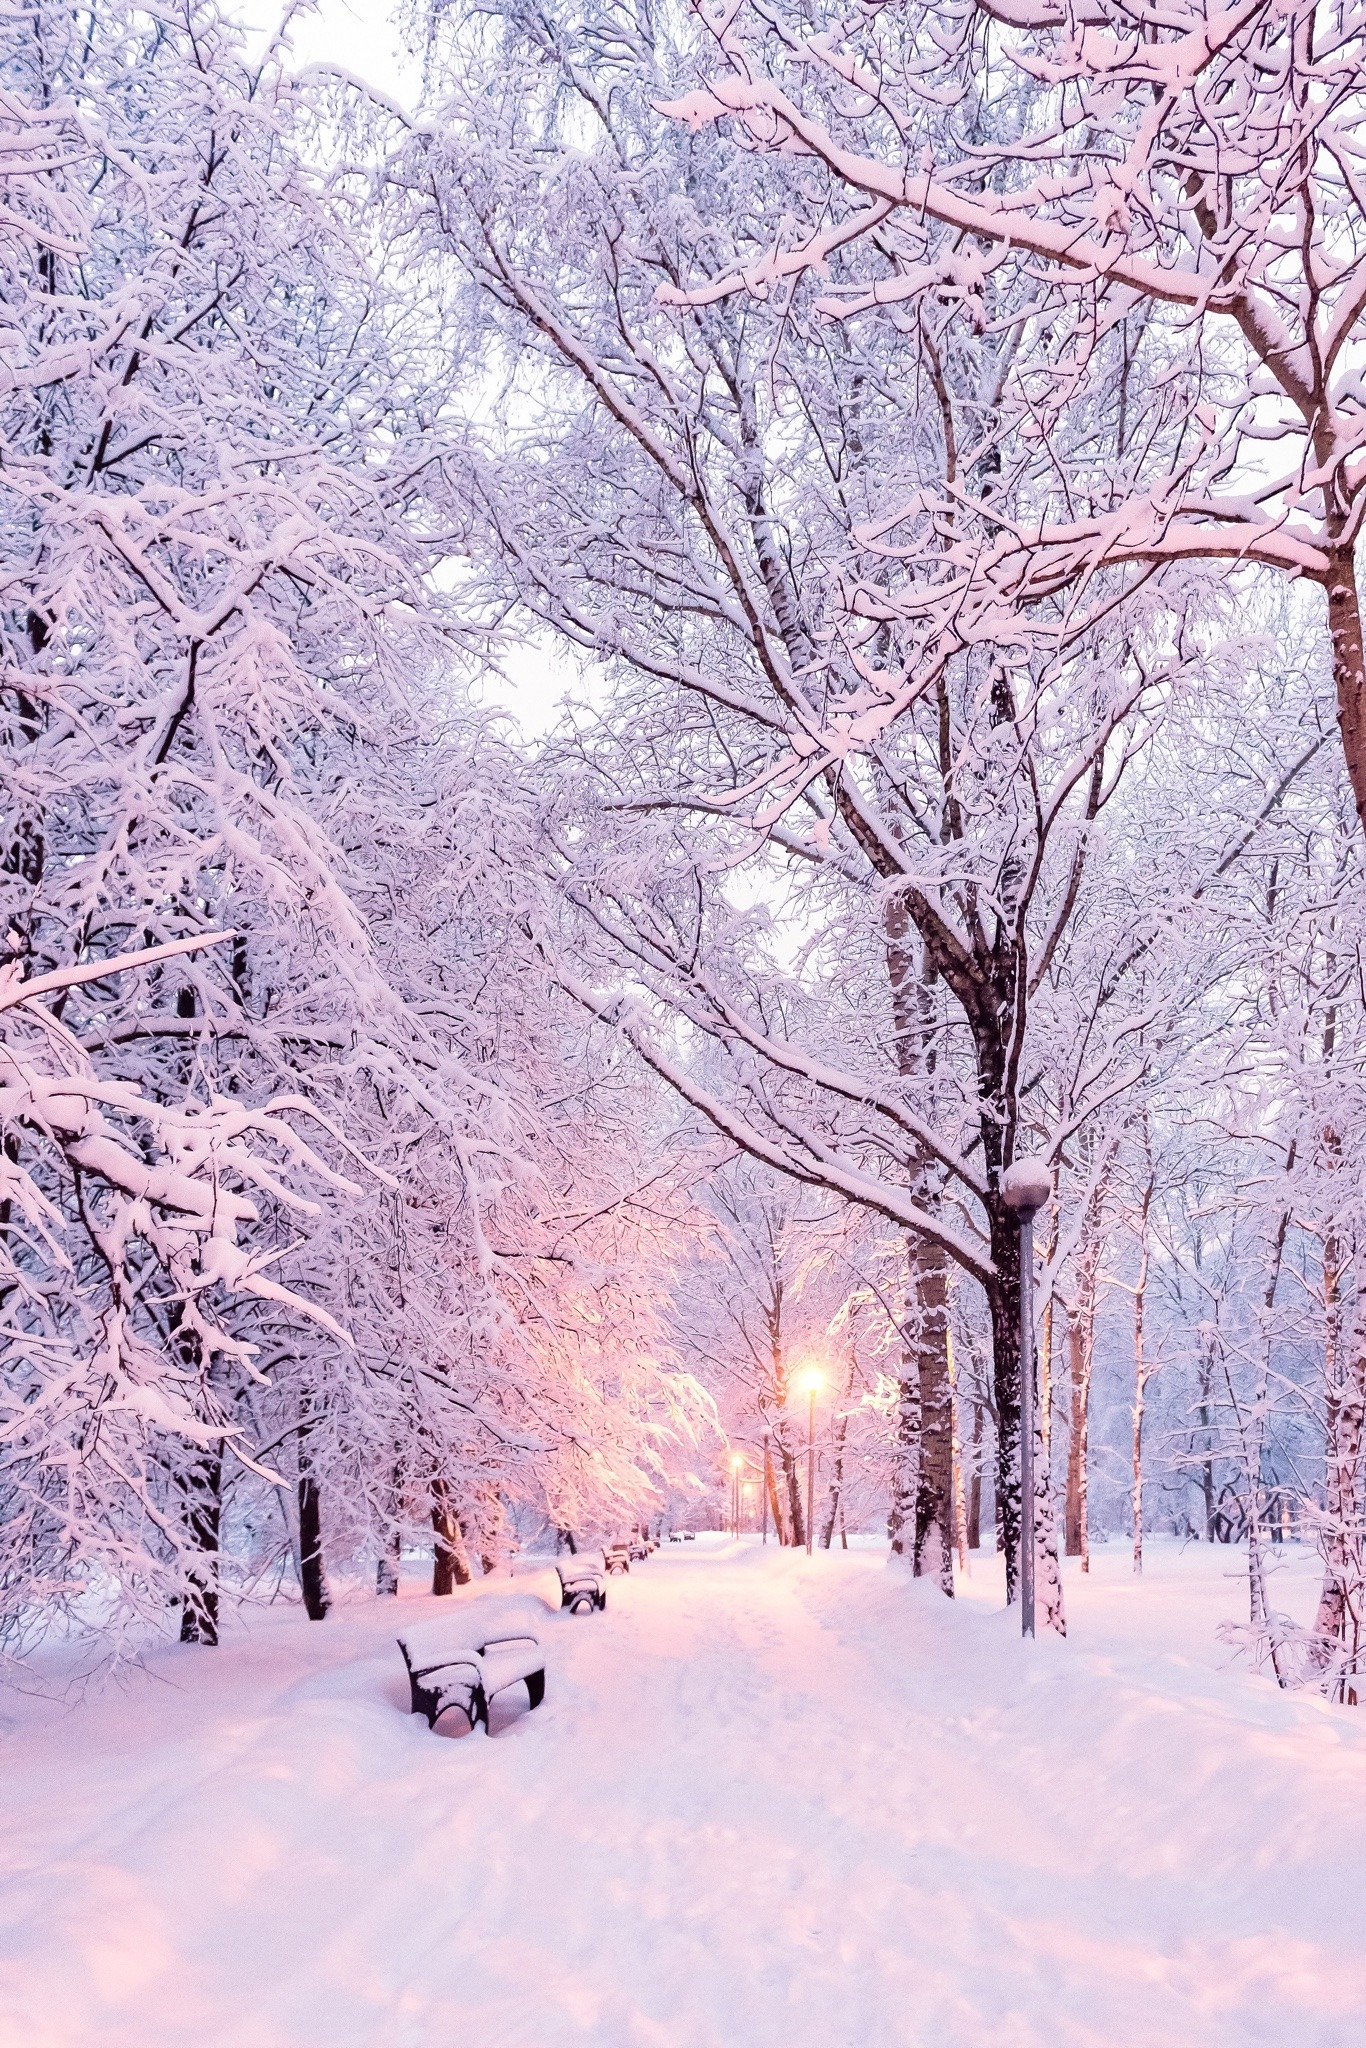 Природа Зимняя сказка. Все белым бело от снега. Но снег такой, не холодный, а в котором хочется повалятся.